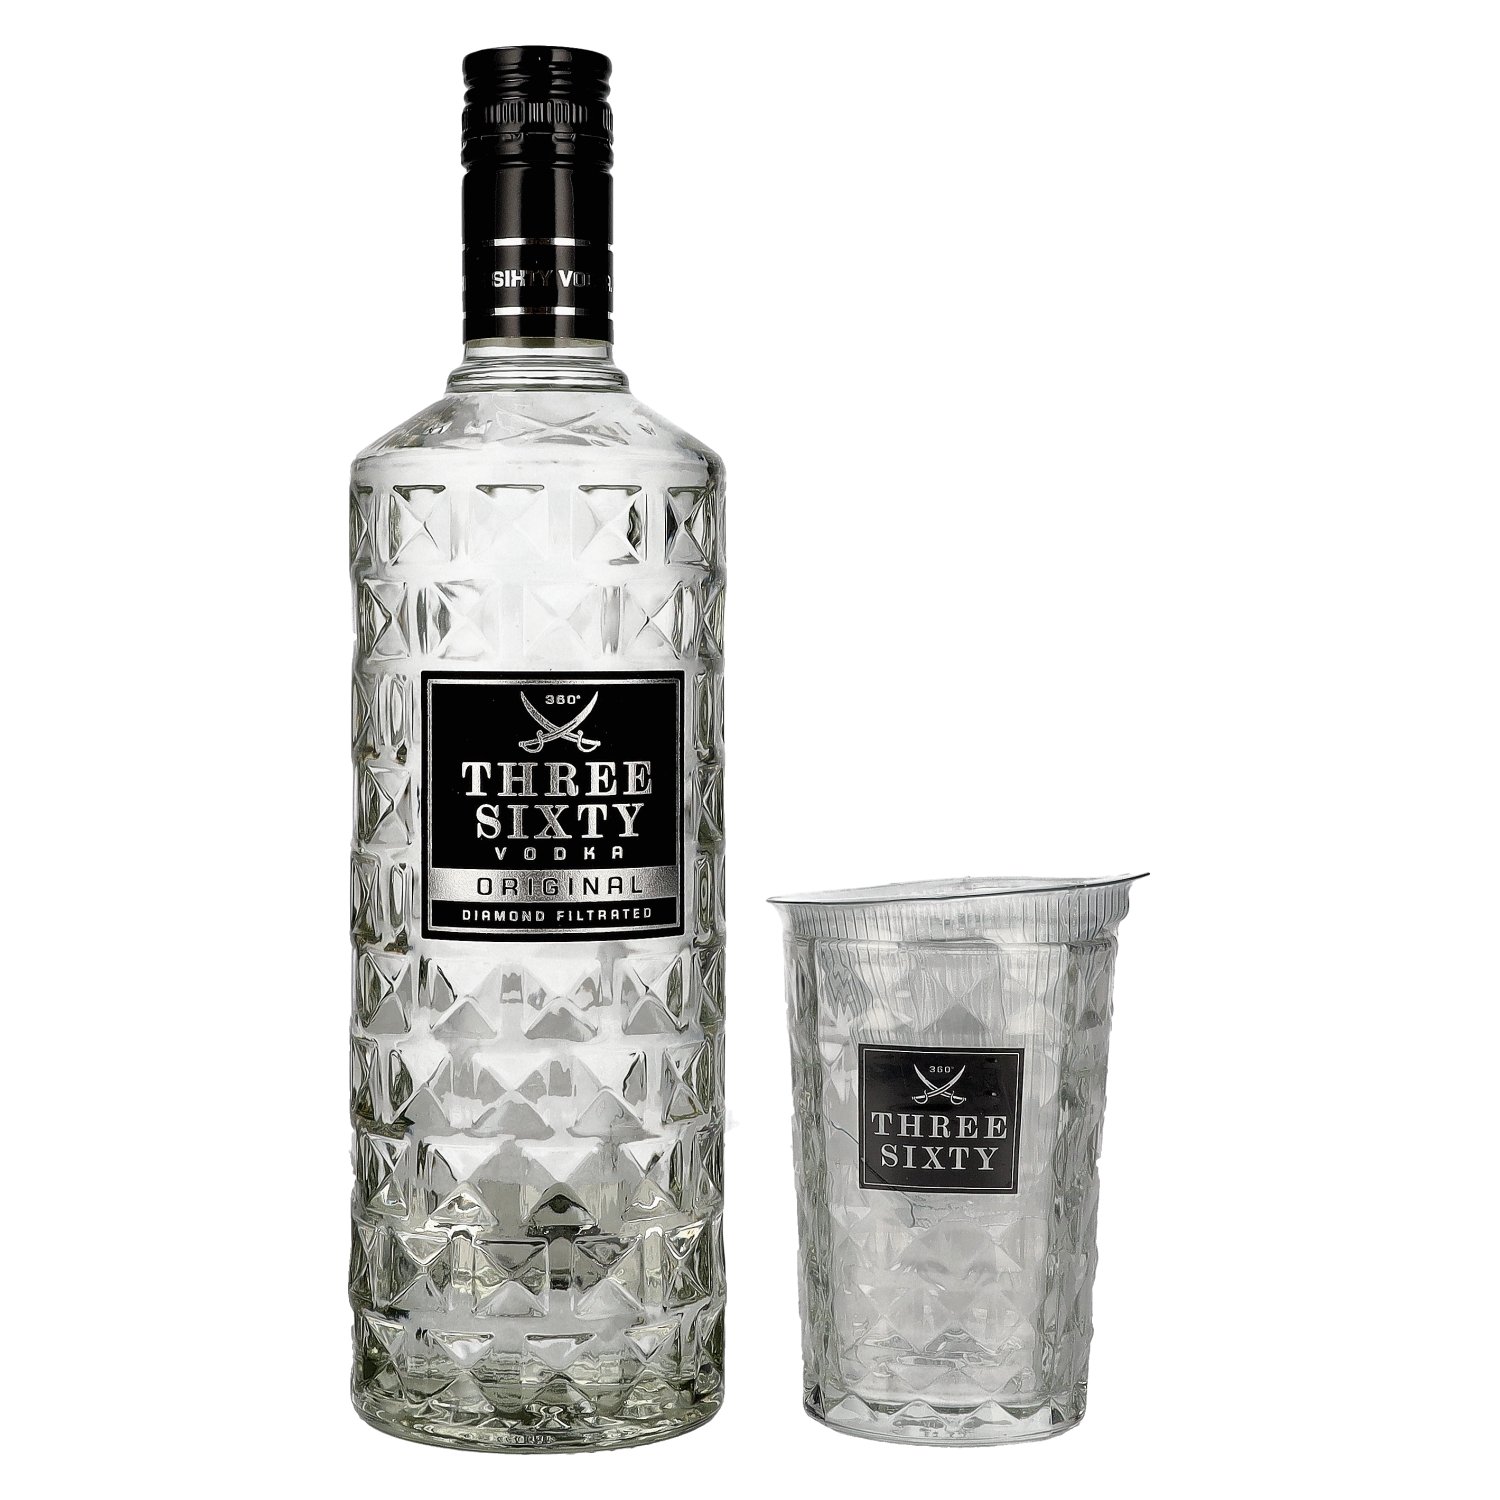 Three Sixty Vodka 37,5% Vol. with glass 0,7l